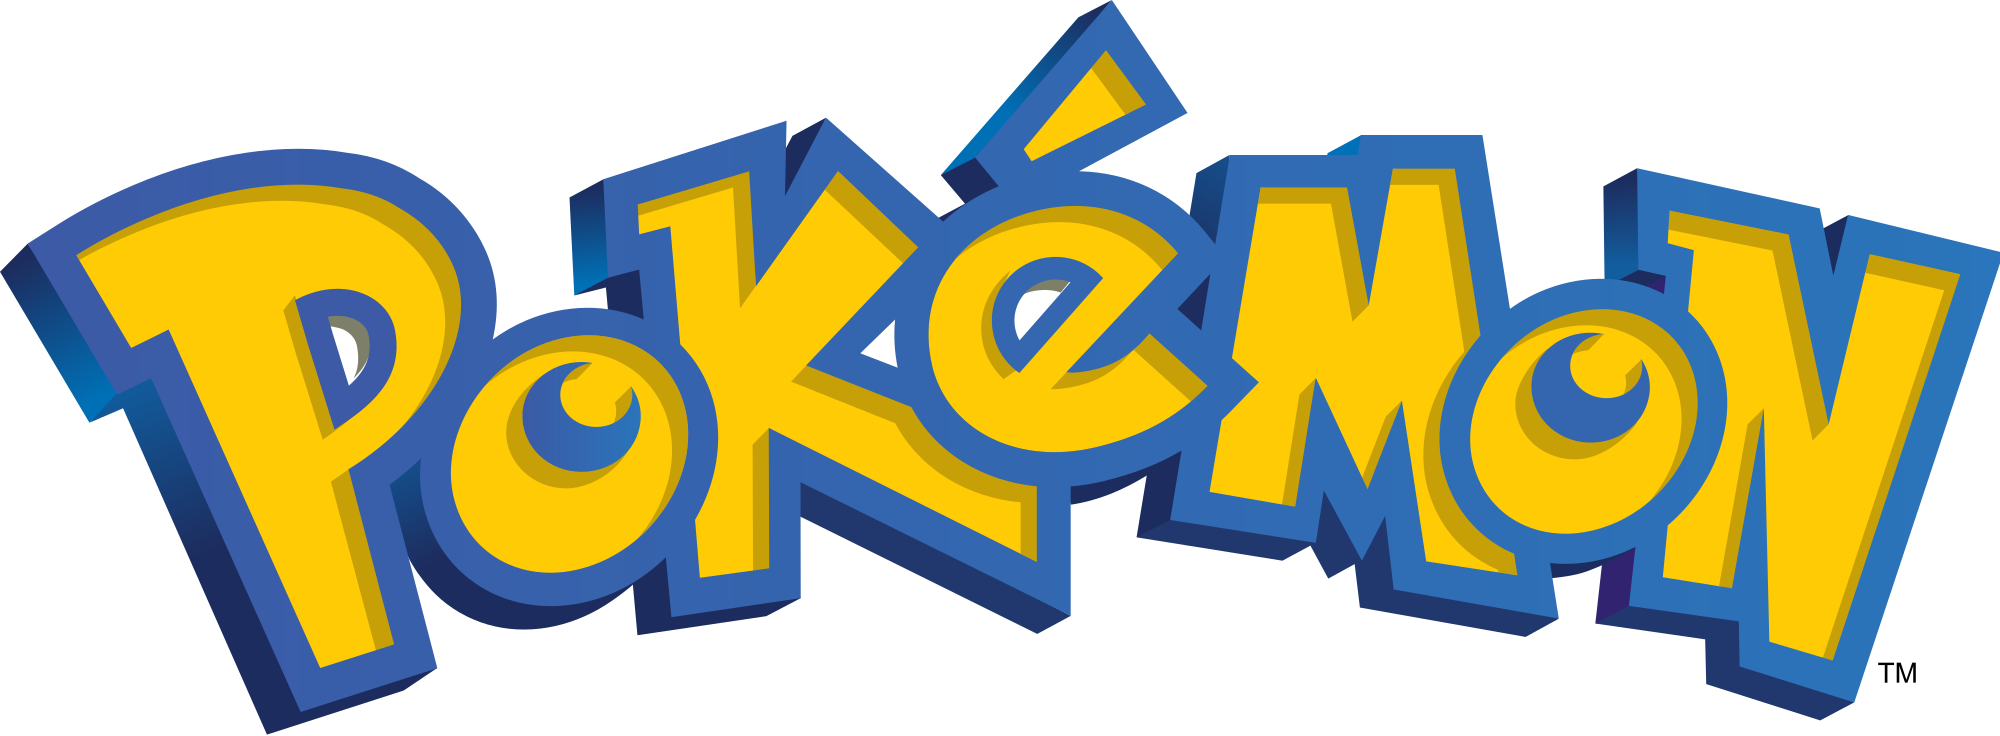 Actualités mensuelles, Pokémon